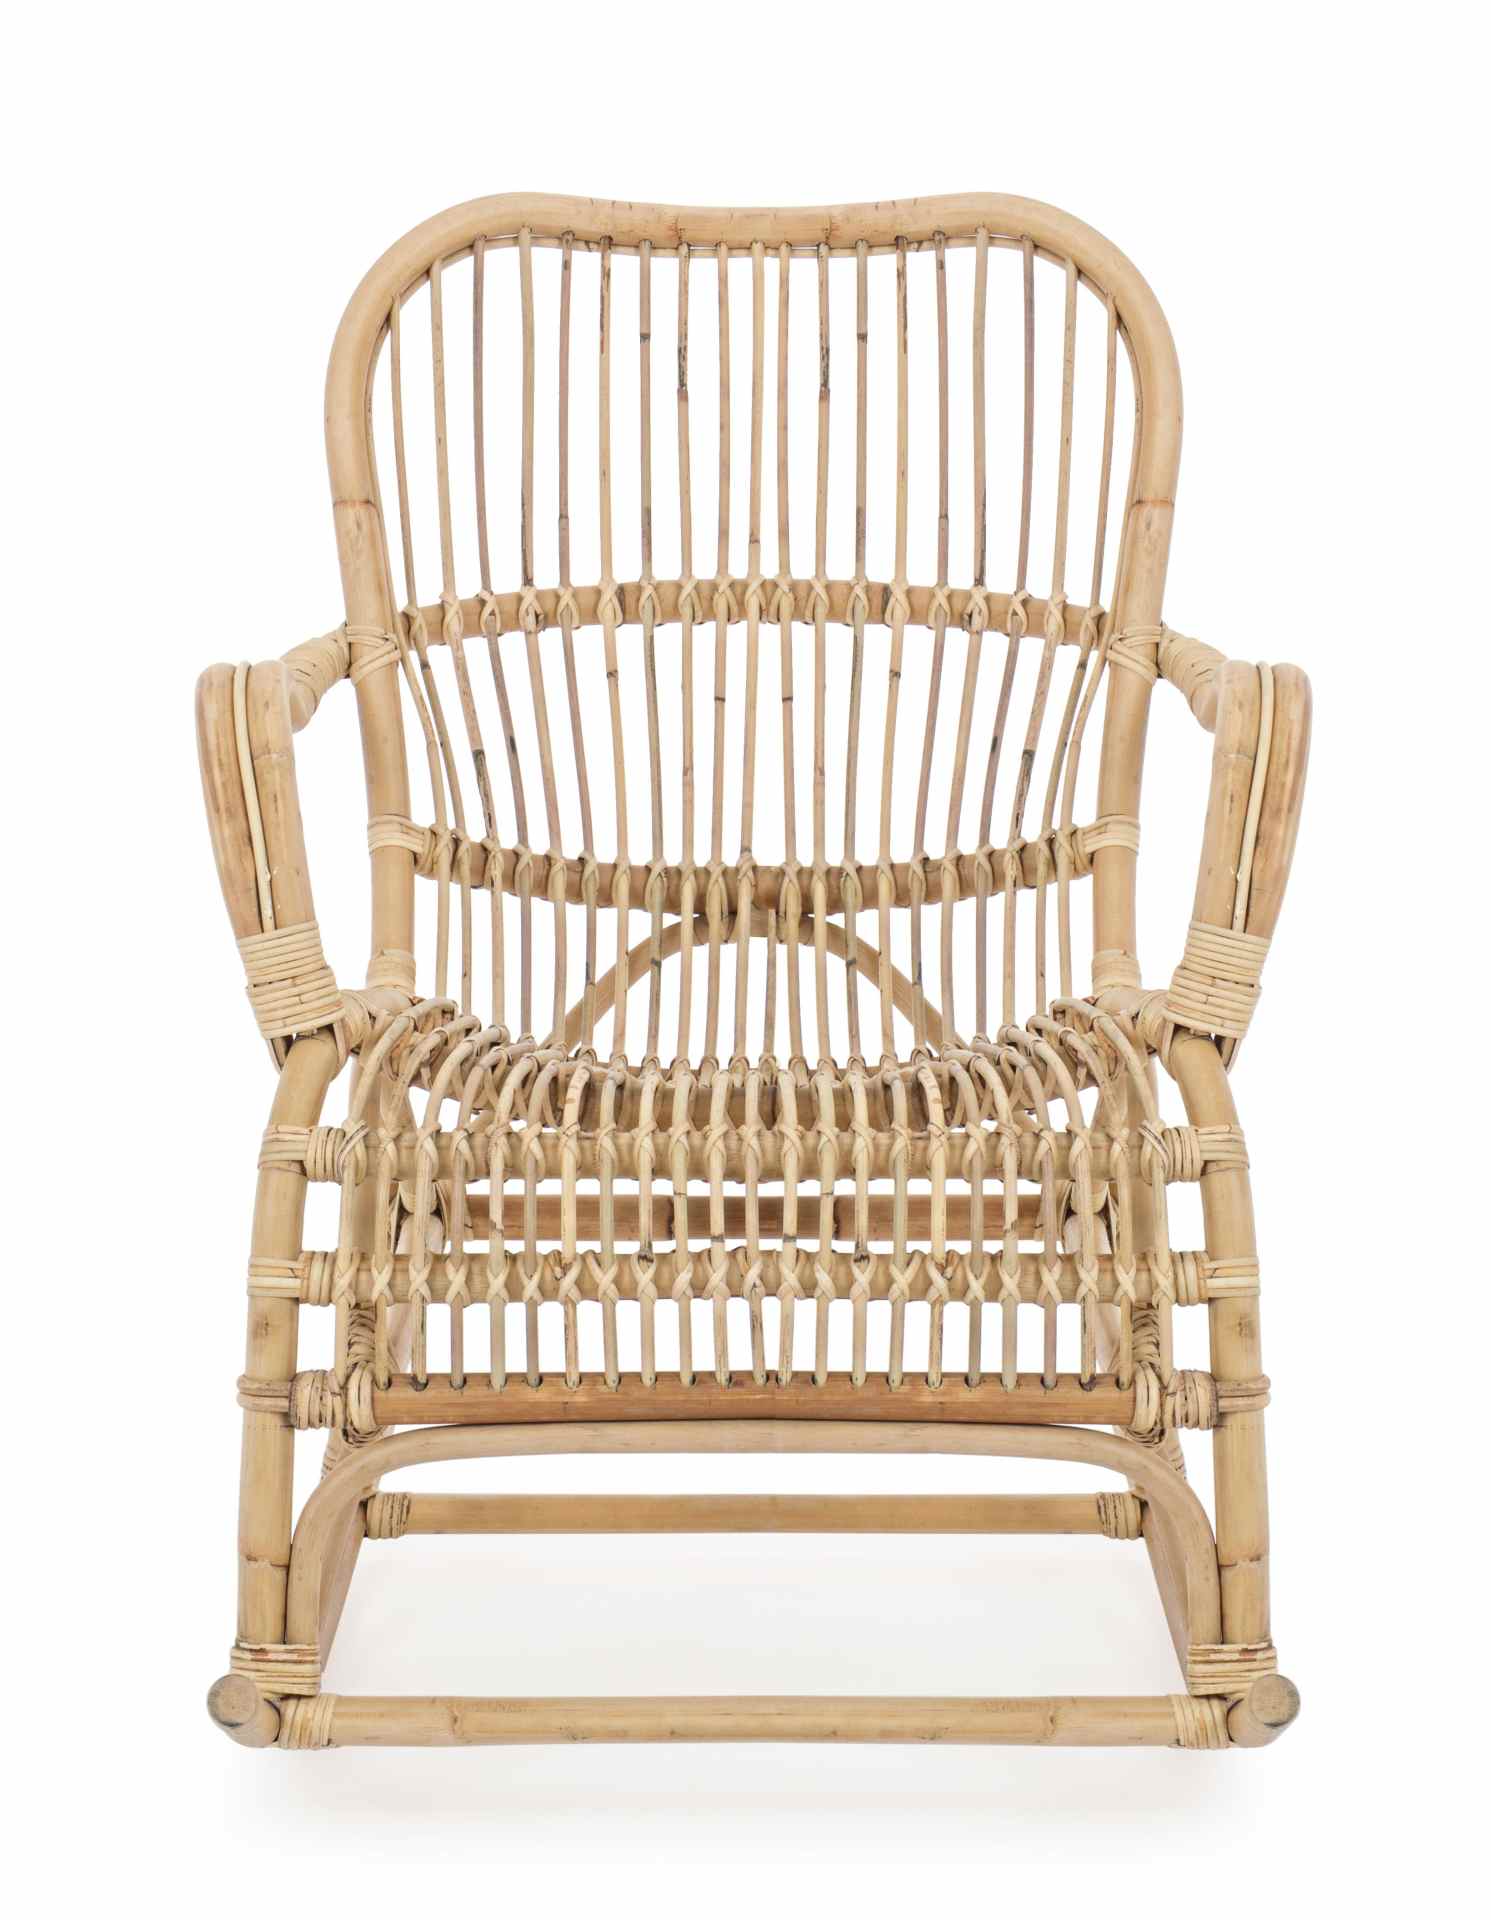 Der Sessel Casimira überzeugt mit seinem klassischen Design. Gefertigt wurde er aus Rattan, welches einen natürlichen Farbton besitzt. Das Gestell ist auch aus Rattan. Der Sessel besitzt eine Sitzhöhe von 49 cm. Die Breite beträgt 66 cm.